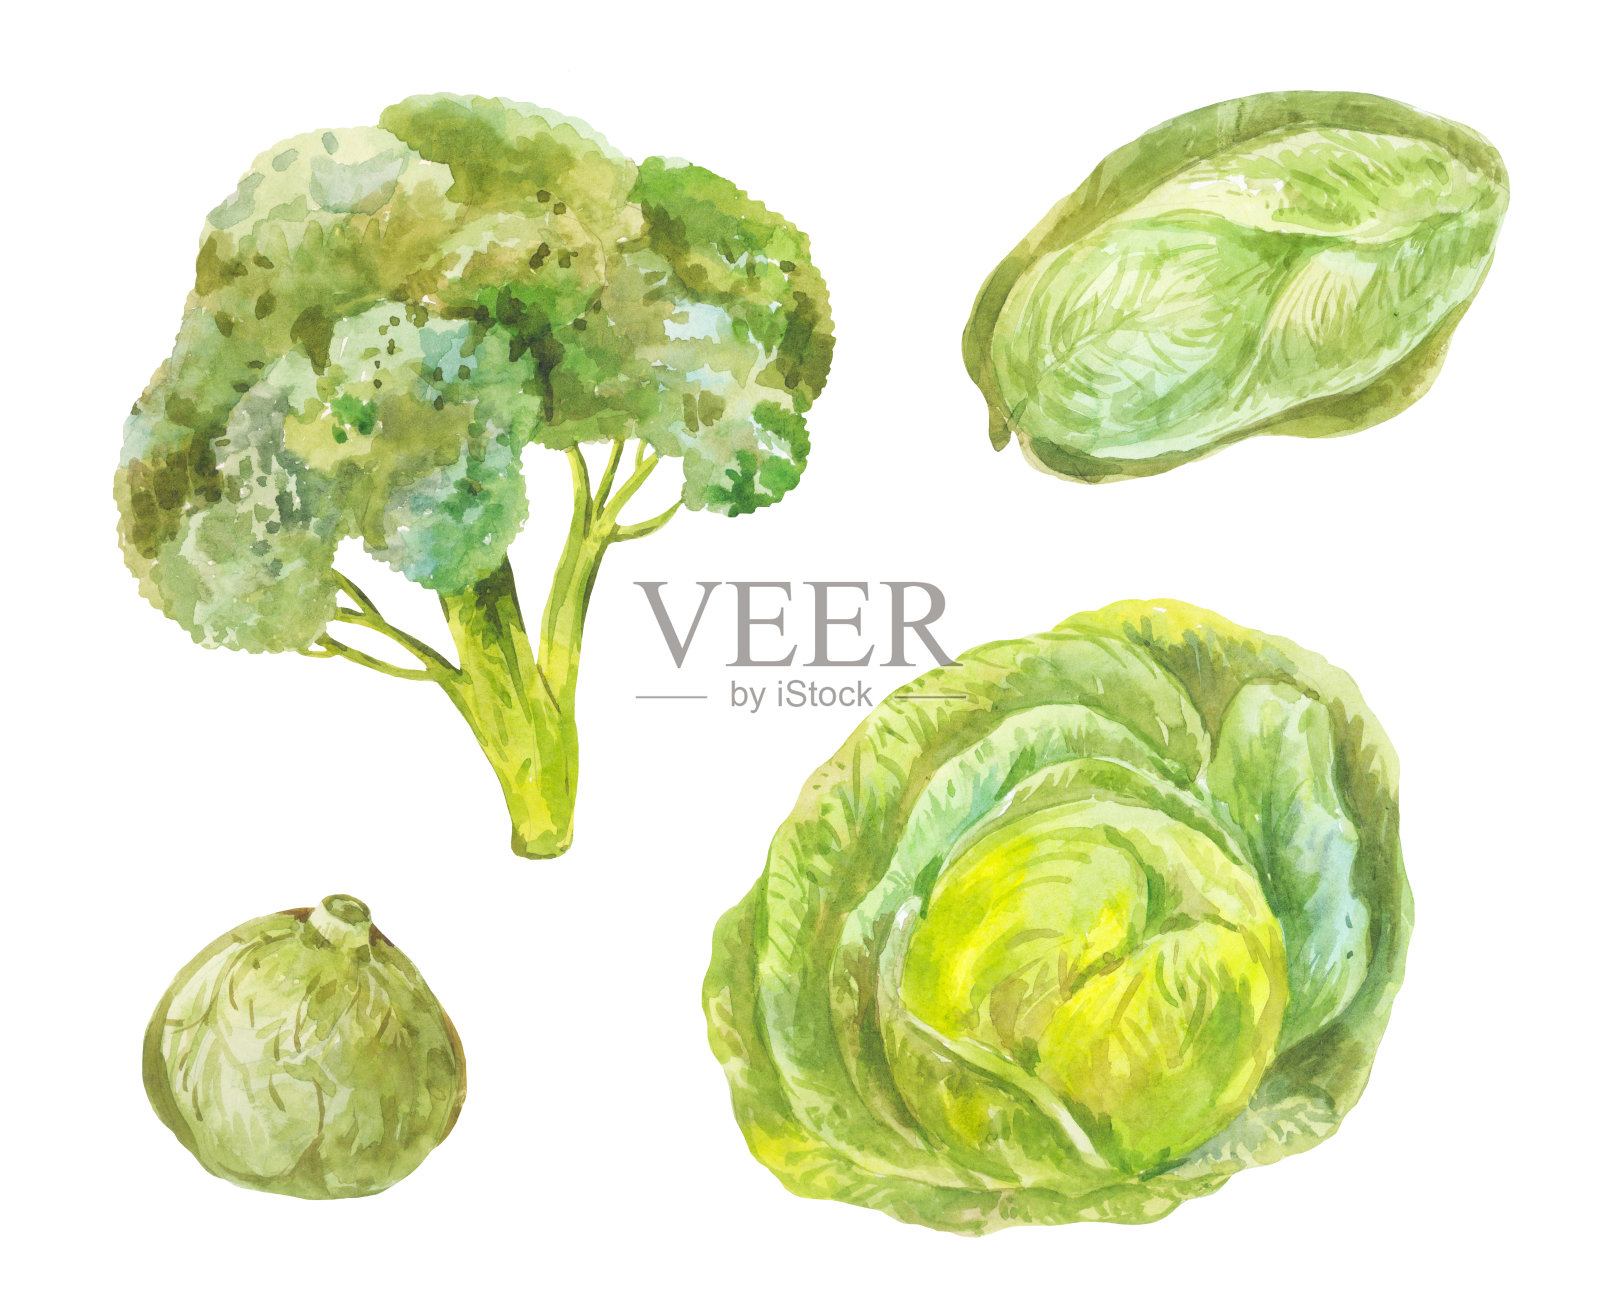 不同品种的卷心菜(北京菜、花椰菜、白菜)。水彩绿色健康食品套装插画图片素材